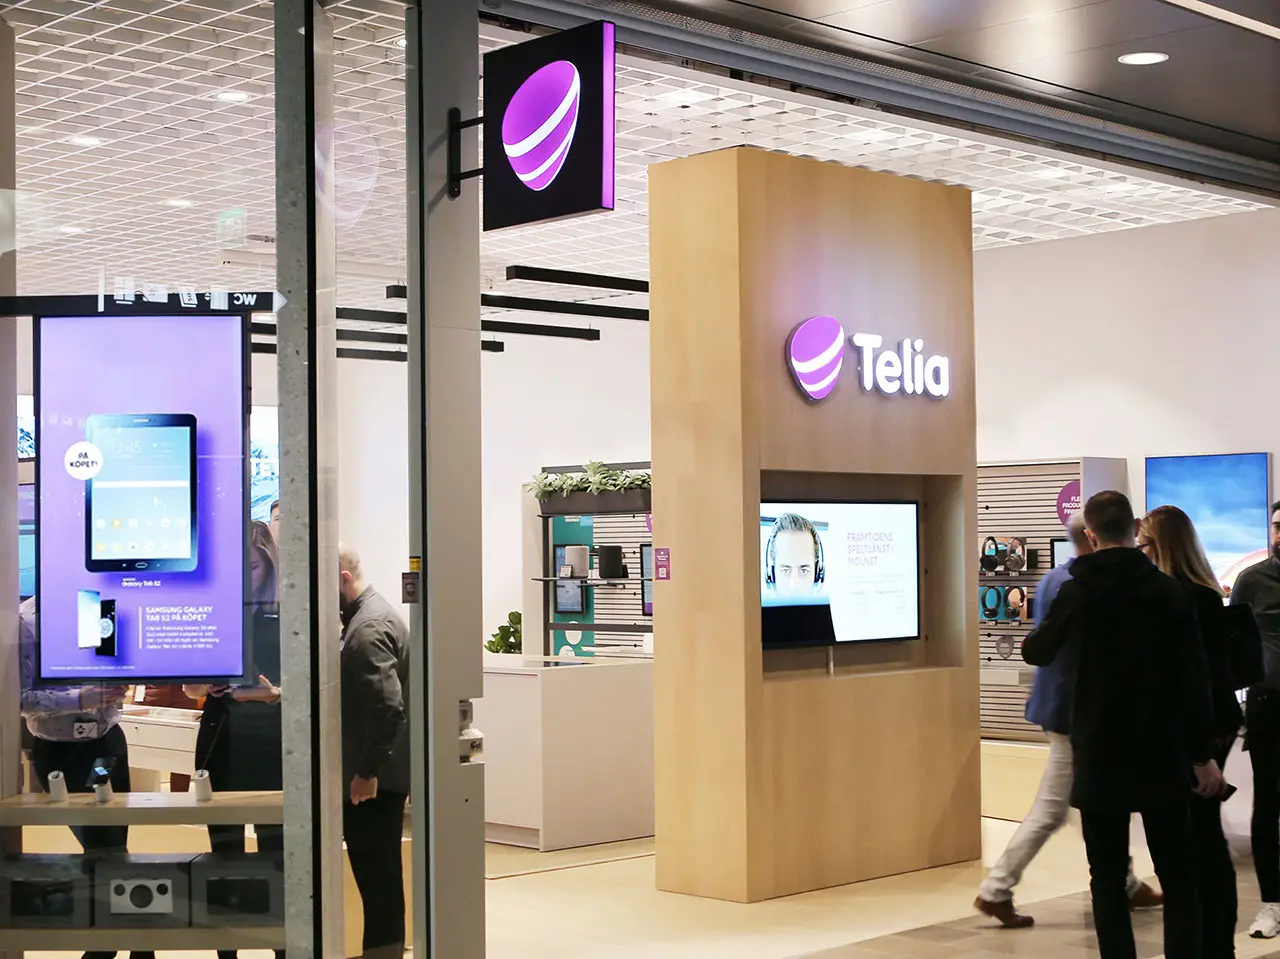 Buy Telia Denmark SIM card at Airport